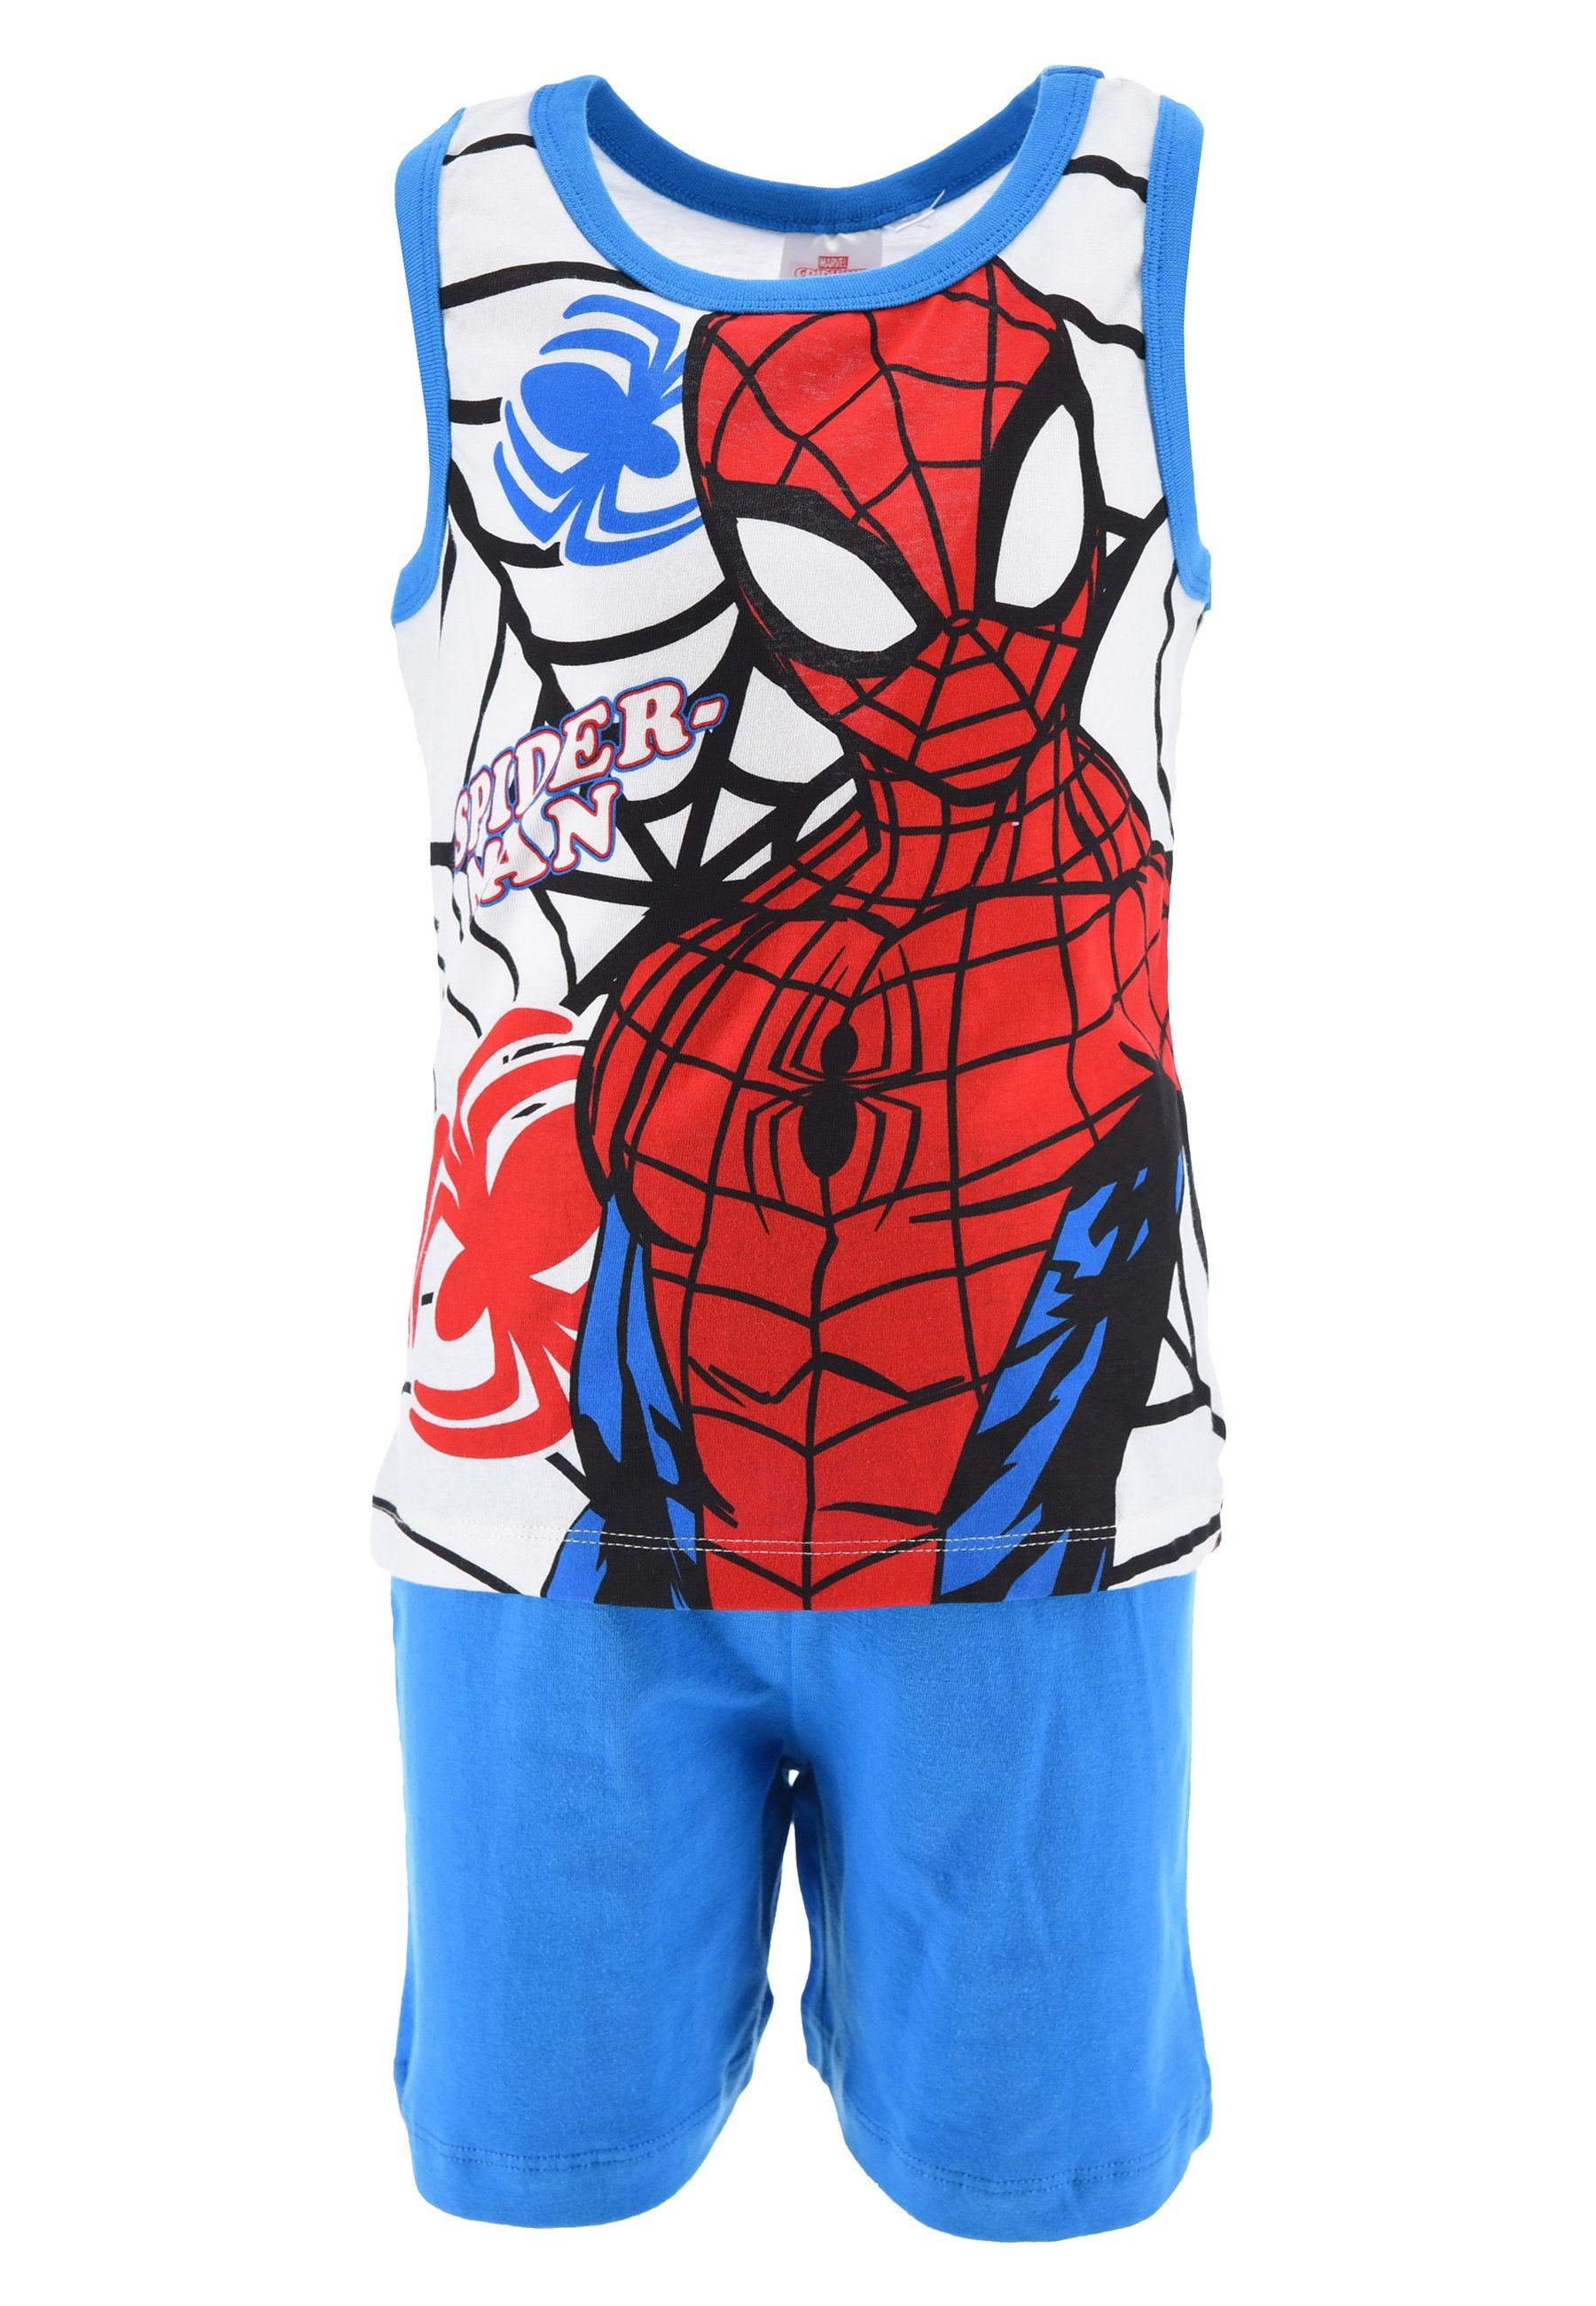 Spiderman Shorty Kinder Jungen Pyjama Schlaf-Set (2 tlg) Blau